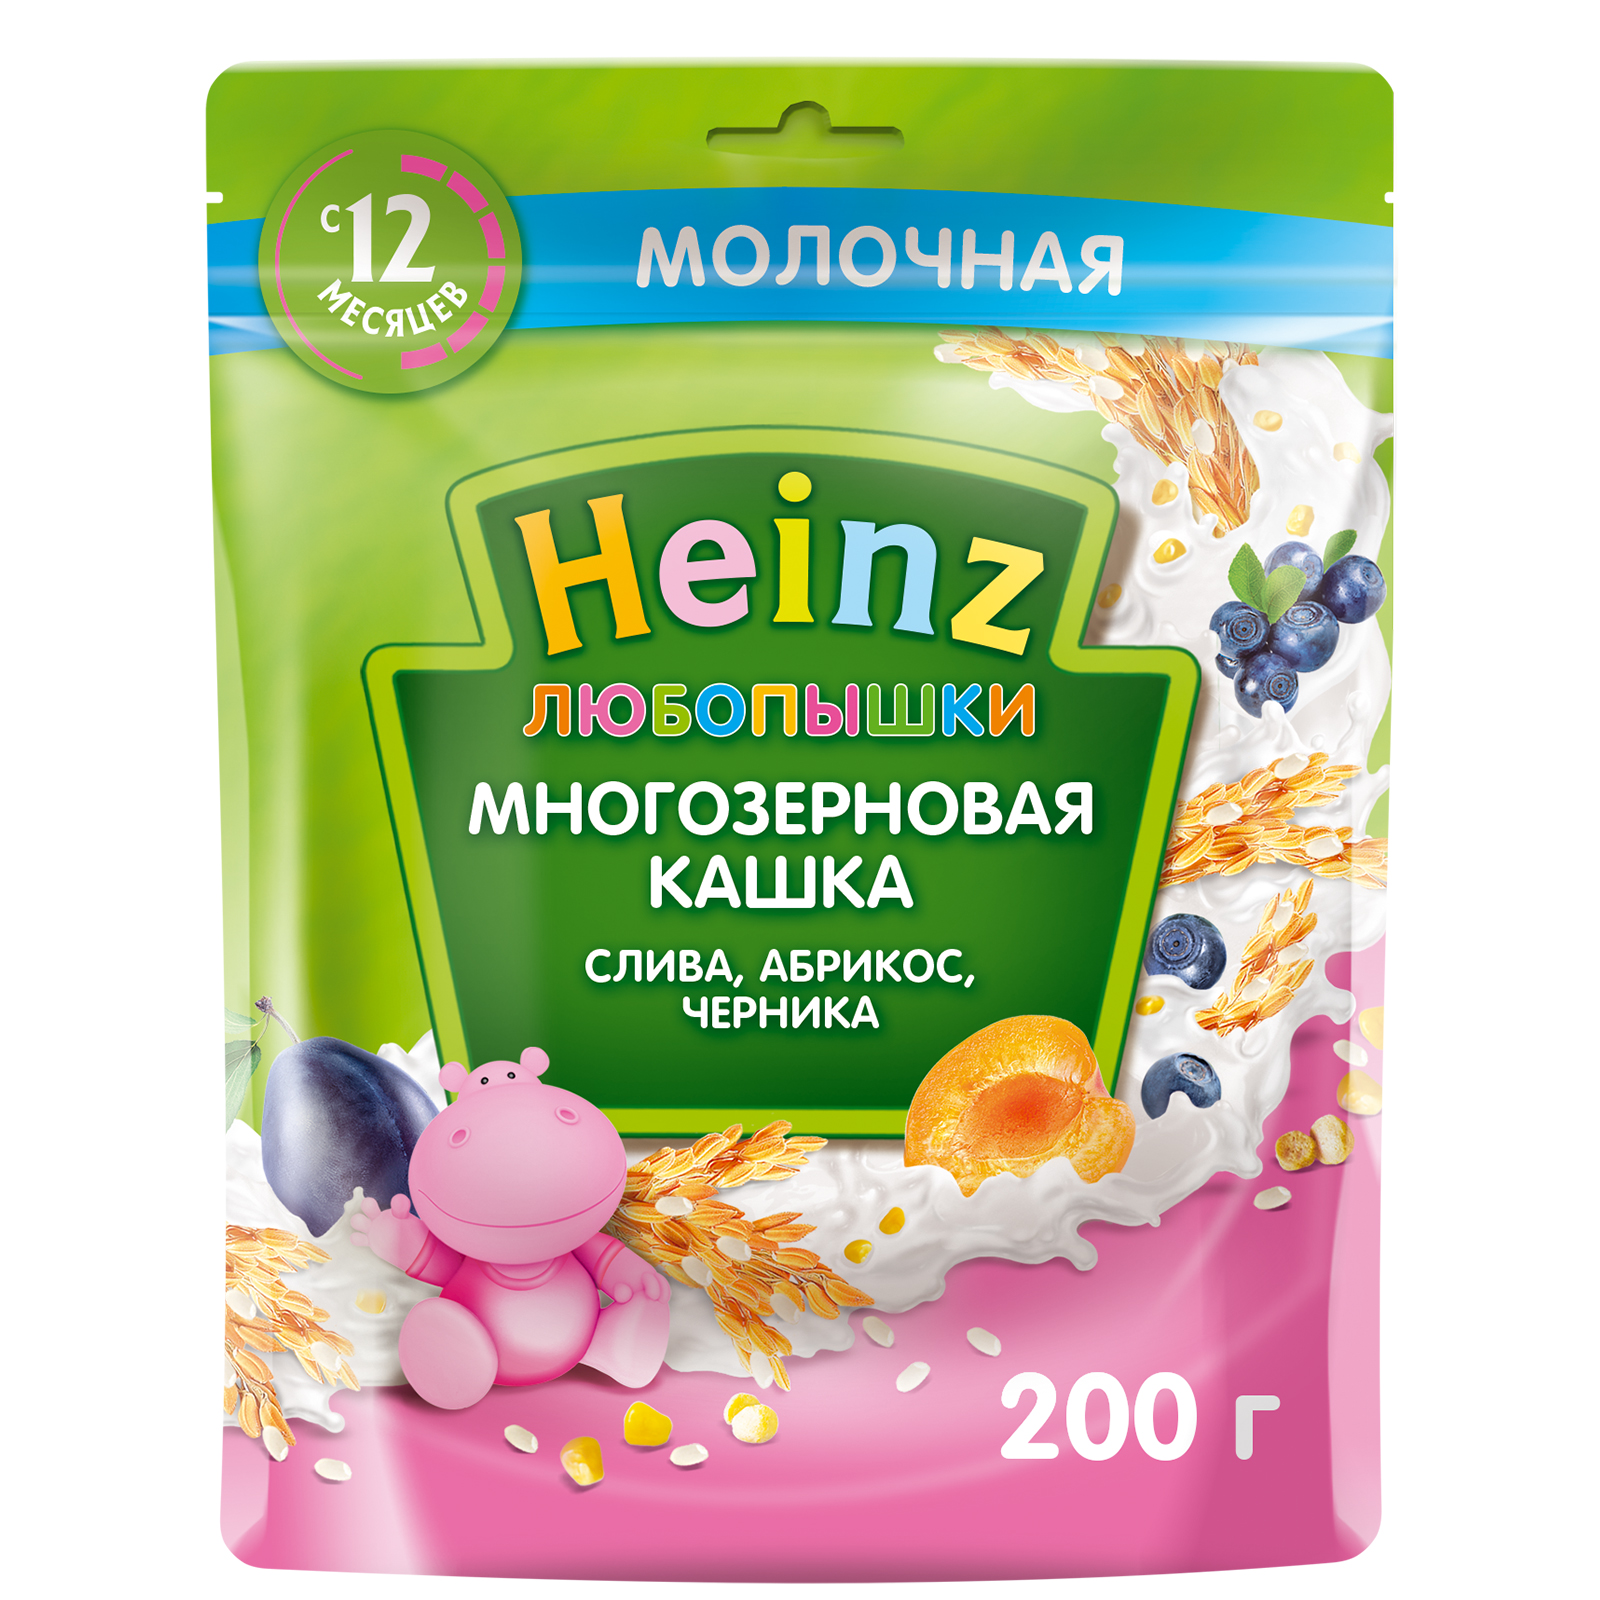 Каша молочная Heinz многозерновая слива-абрикос-черника с 12-ти месяцев 200 г